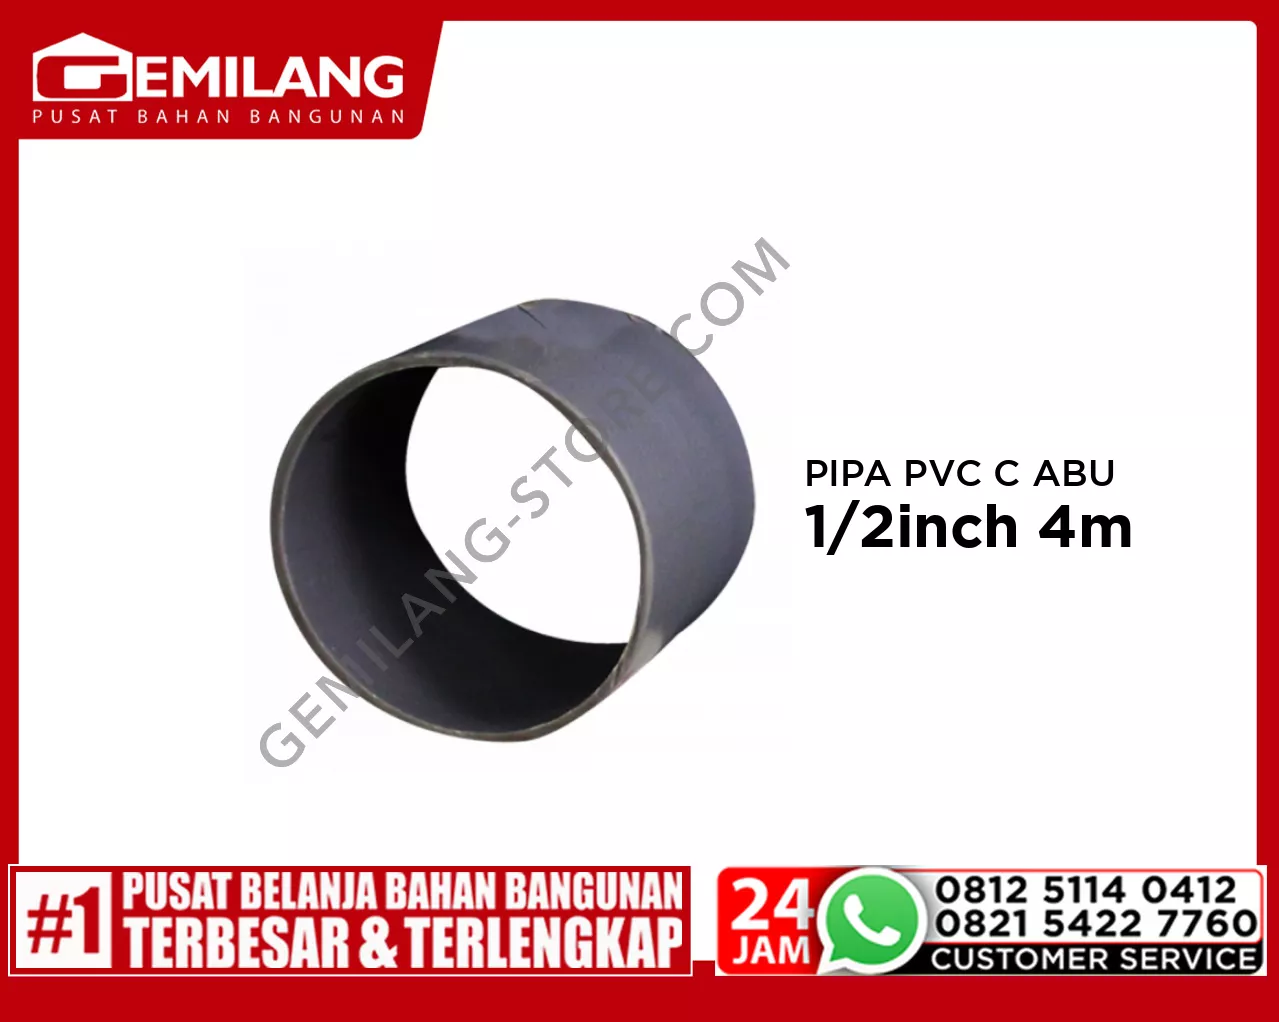 LANGGENG PIPA PVC C ABU-ABU 1/2inch 4m